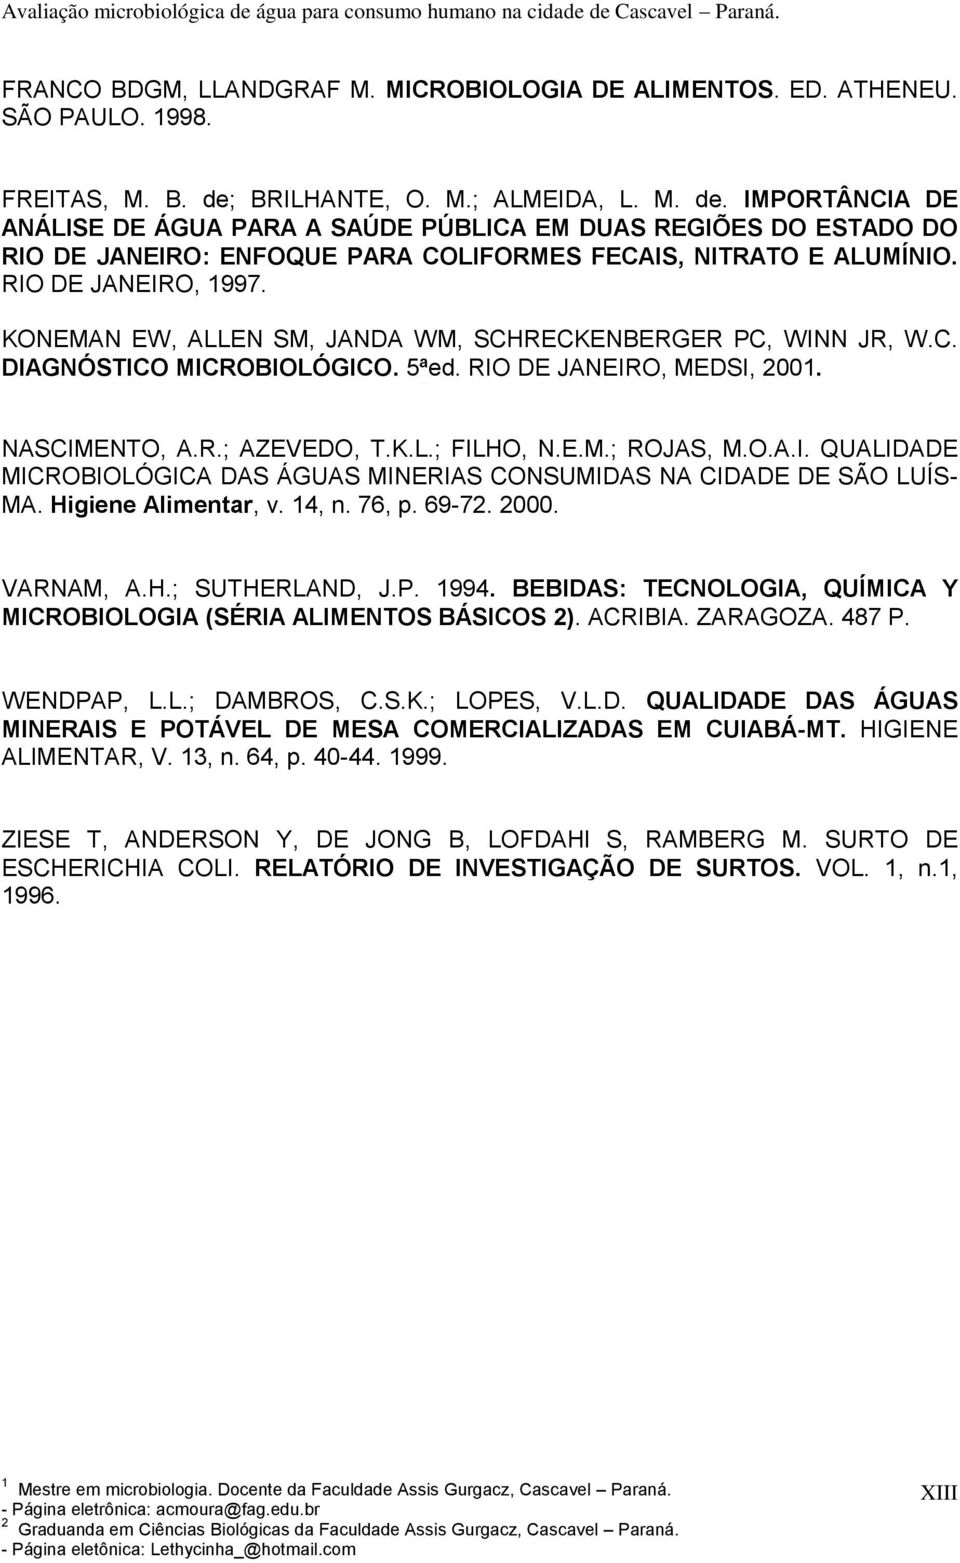 RIO DE JANEIRO, 1997. KONEMAN EW, ALLEN SM, JANDA WM, SCHRECKENBERGER PC, WINN JR, W.C. DIAGNÓSTICO MICROBIOLÓGICO. 5ªed. RIO DE JANEIRO, MEDSI, 2001. NASCIMENTO, A.R.; AZEVEDO, T.K.L.; FILHO, N.E.M.; ROJAS, M.